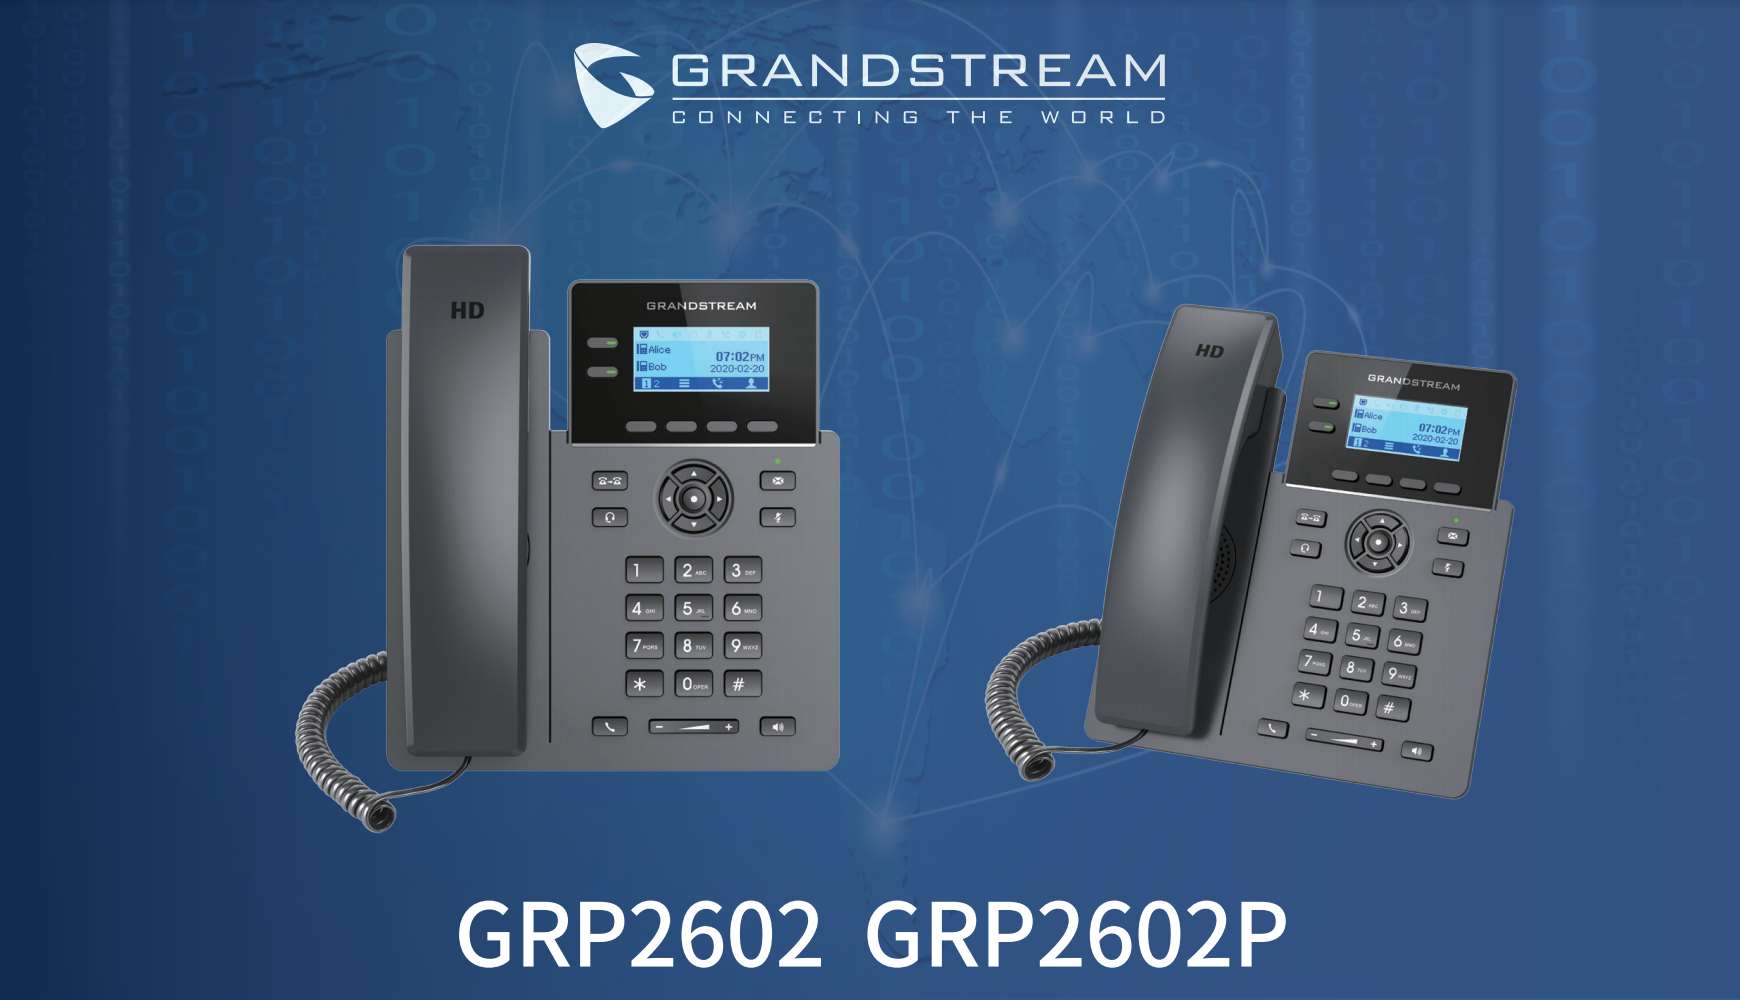 قیمت تلفن گرنداستریم GRP2602P Grandstream با بهترین قیمت و گارانتی یکساله